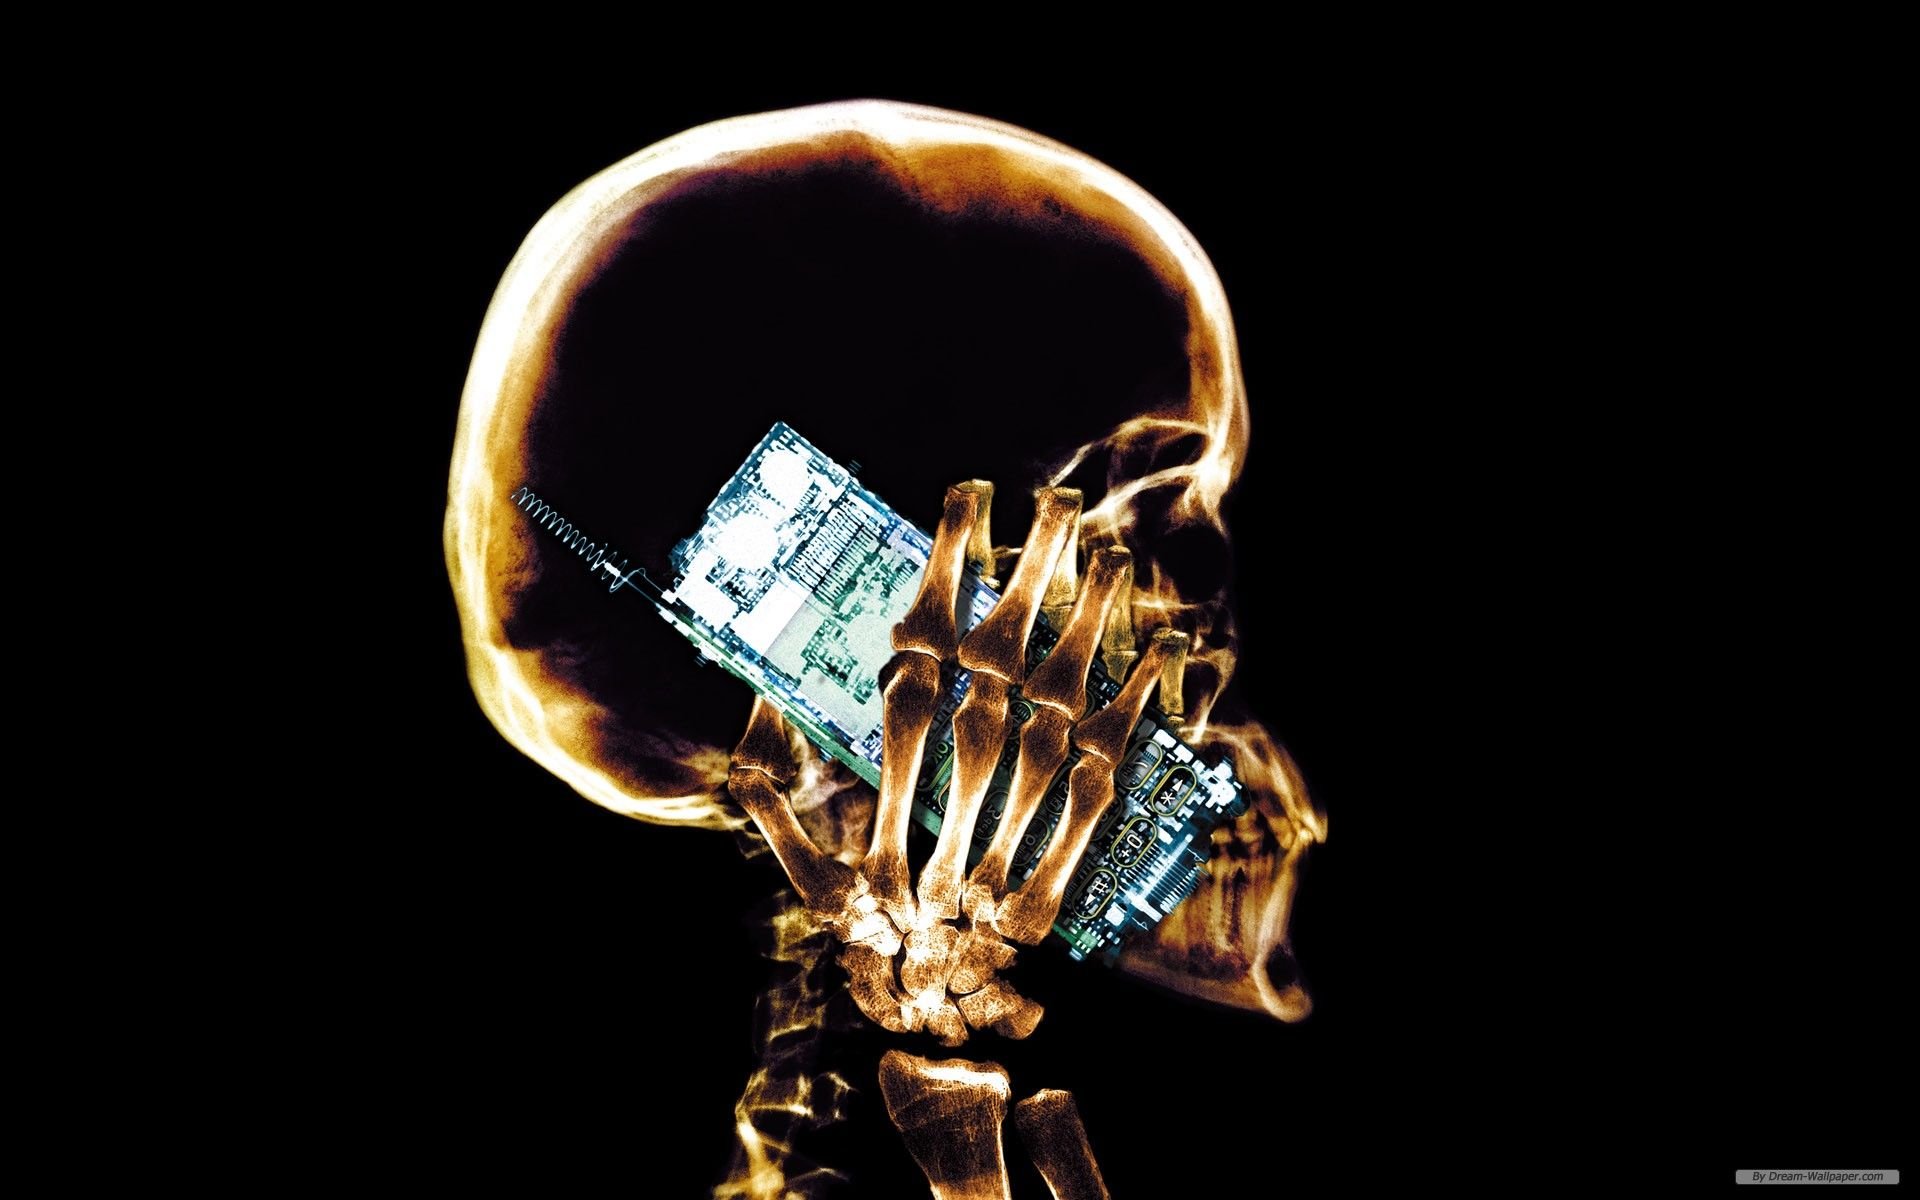 عکس رادیولوژی واقعی از انسان در حال مکالمه با موبایل